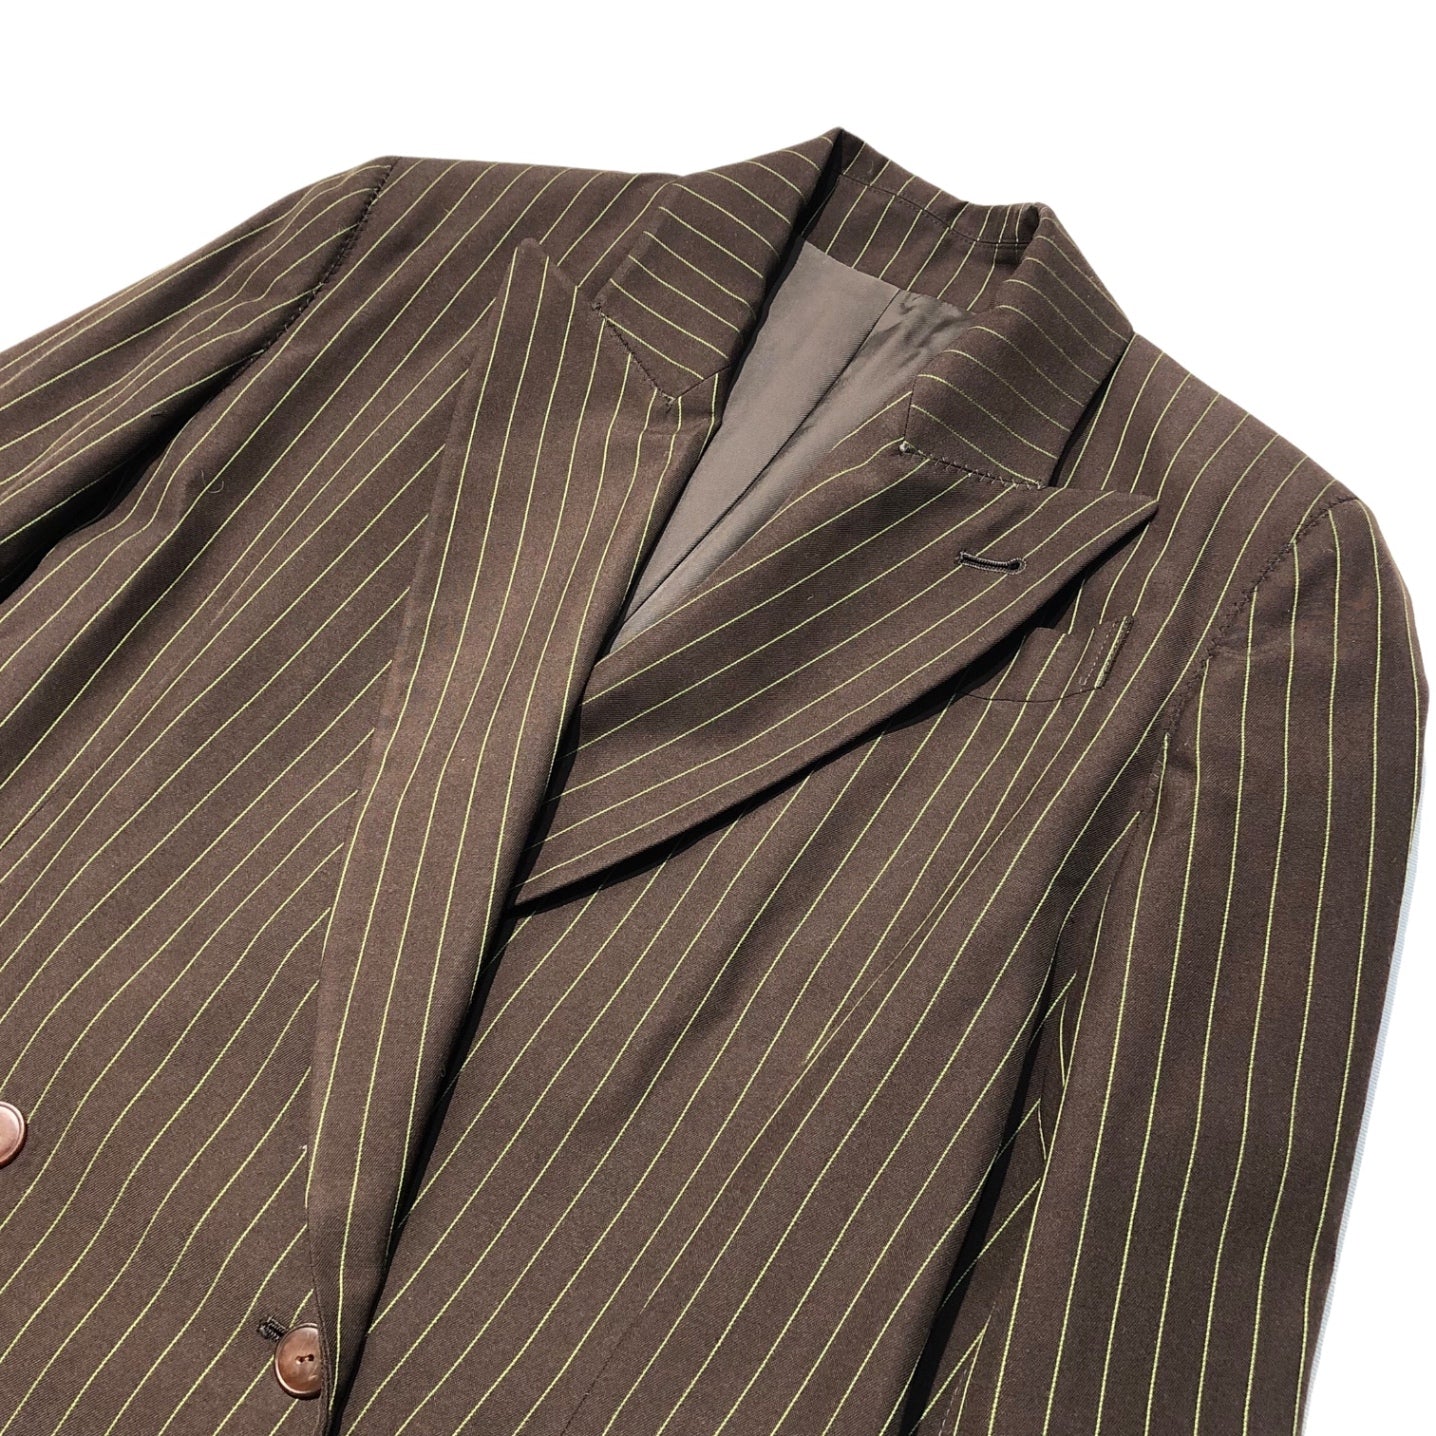 Jean Paul GAULTIER FEMME(ジャンポールゴルチエファム) 90's striped double jacket setup ストライプ ダブル ジャケット セットアップ 40(L程度) ブラウン スラックス パンツ テーラード スーツ